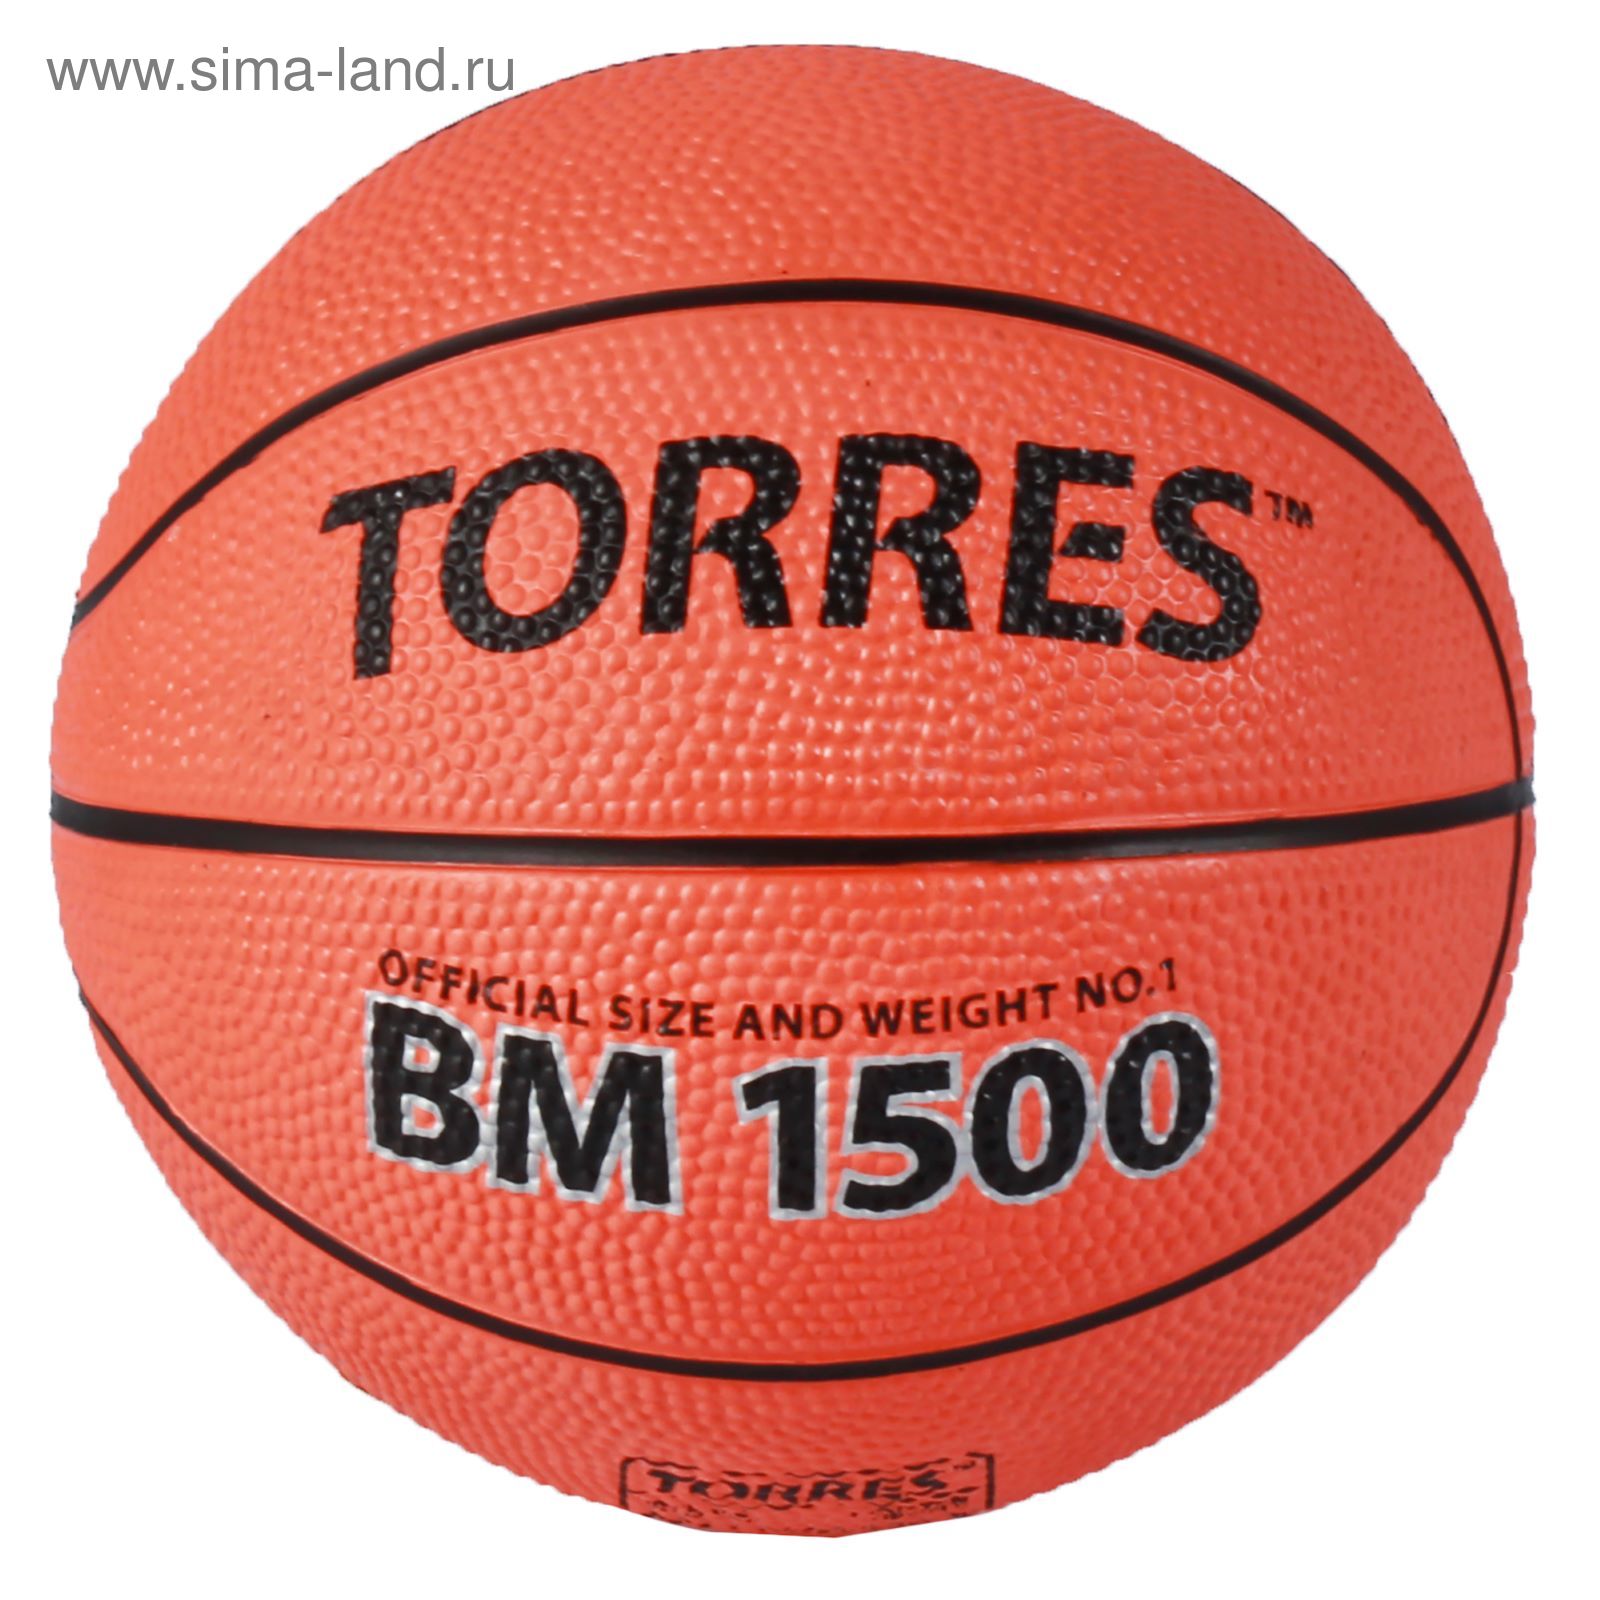 Мяч баскетбольный сувенирный Torres BM1500, B00101, размер 1